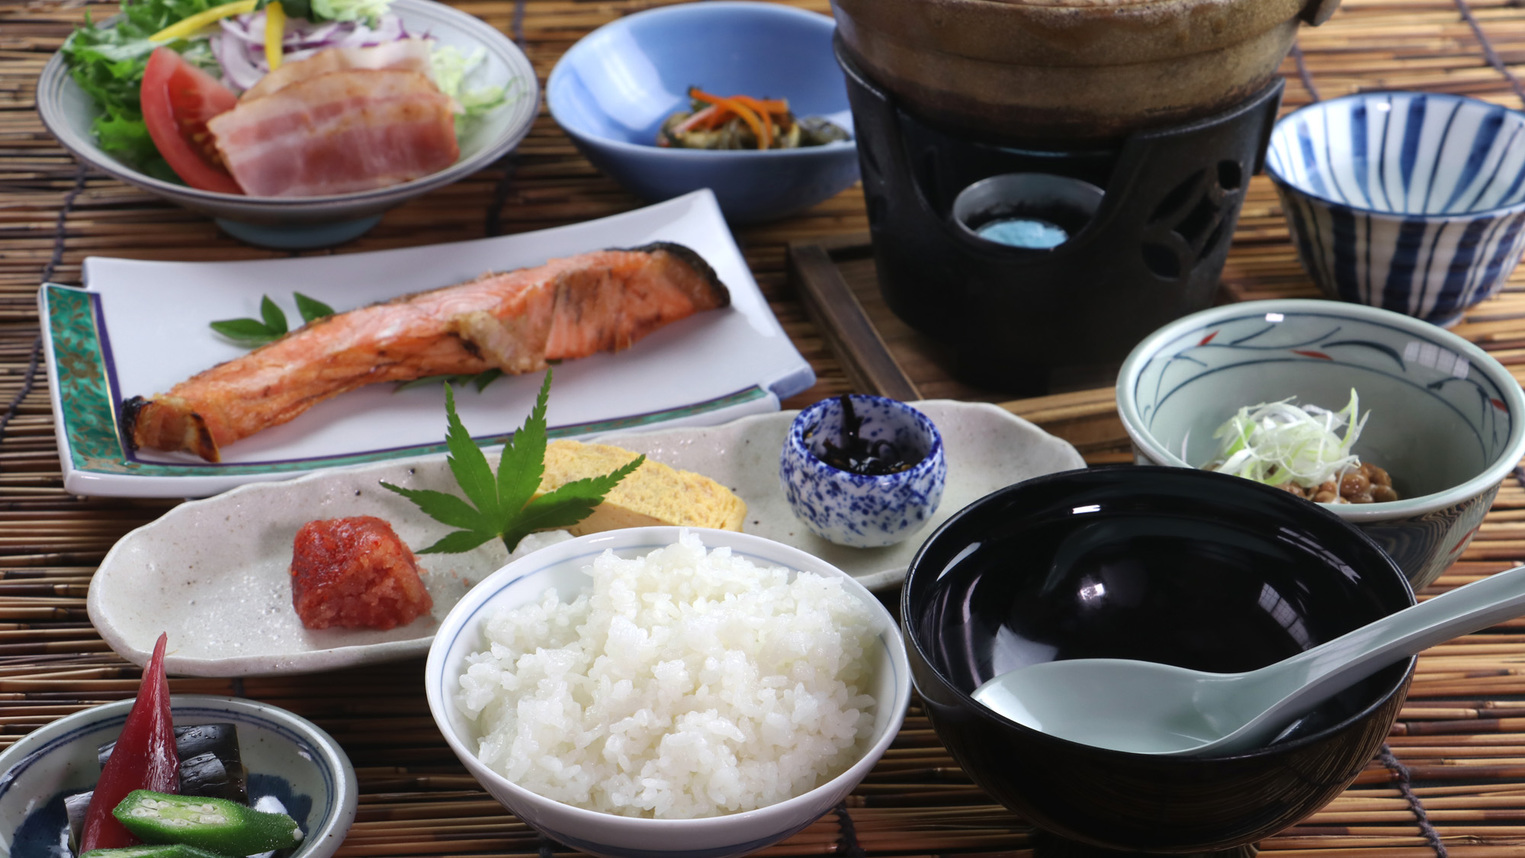 欅御膳−keyaki−豚の角煮と旬野菜の和食膳☆料理長がこだわる手作りの品々と厳選海の幸を堪能